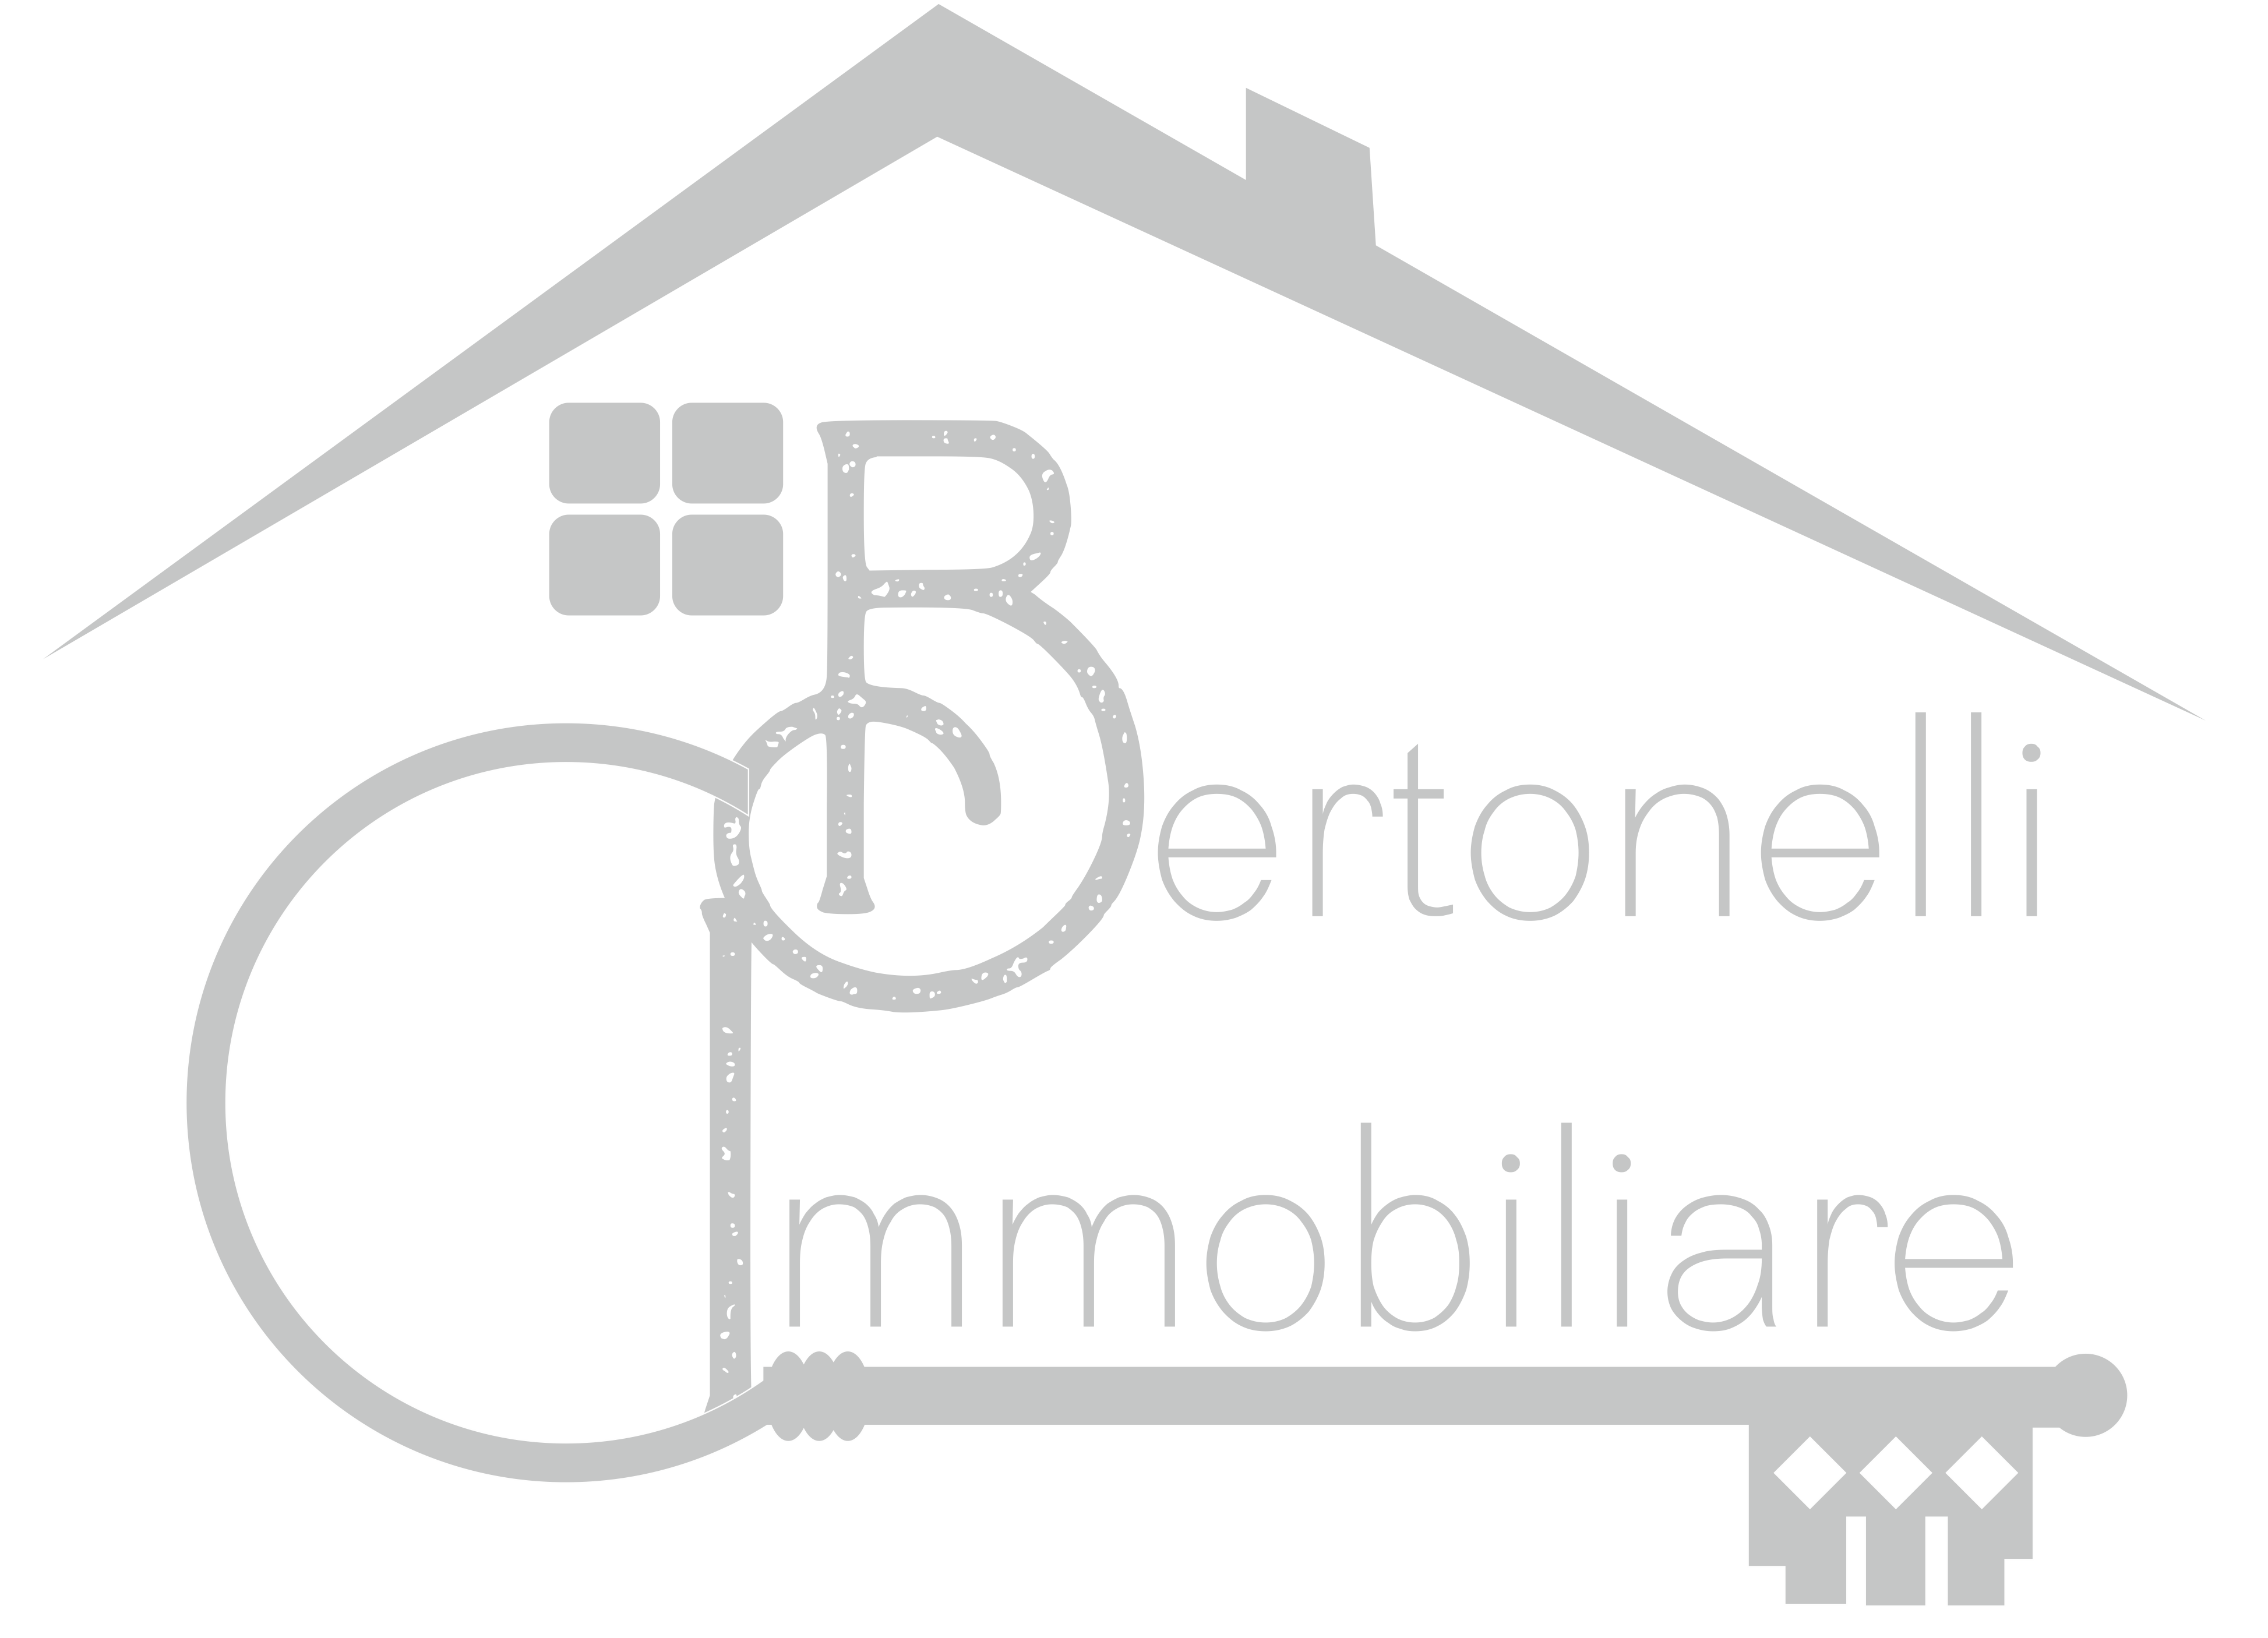 Immobiliare Bertonelli